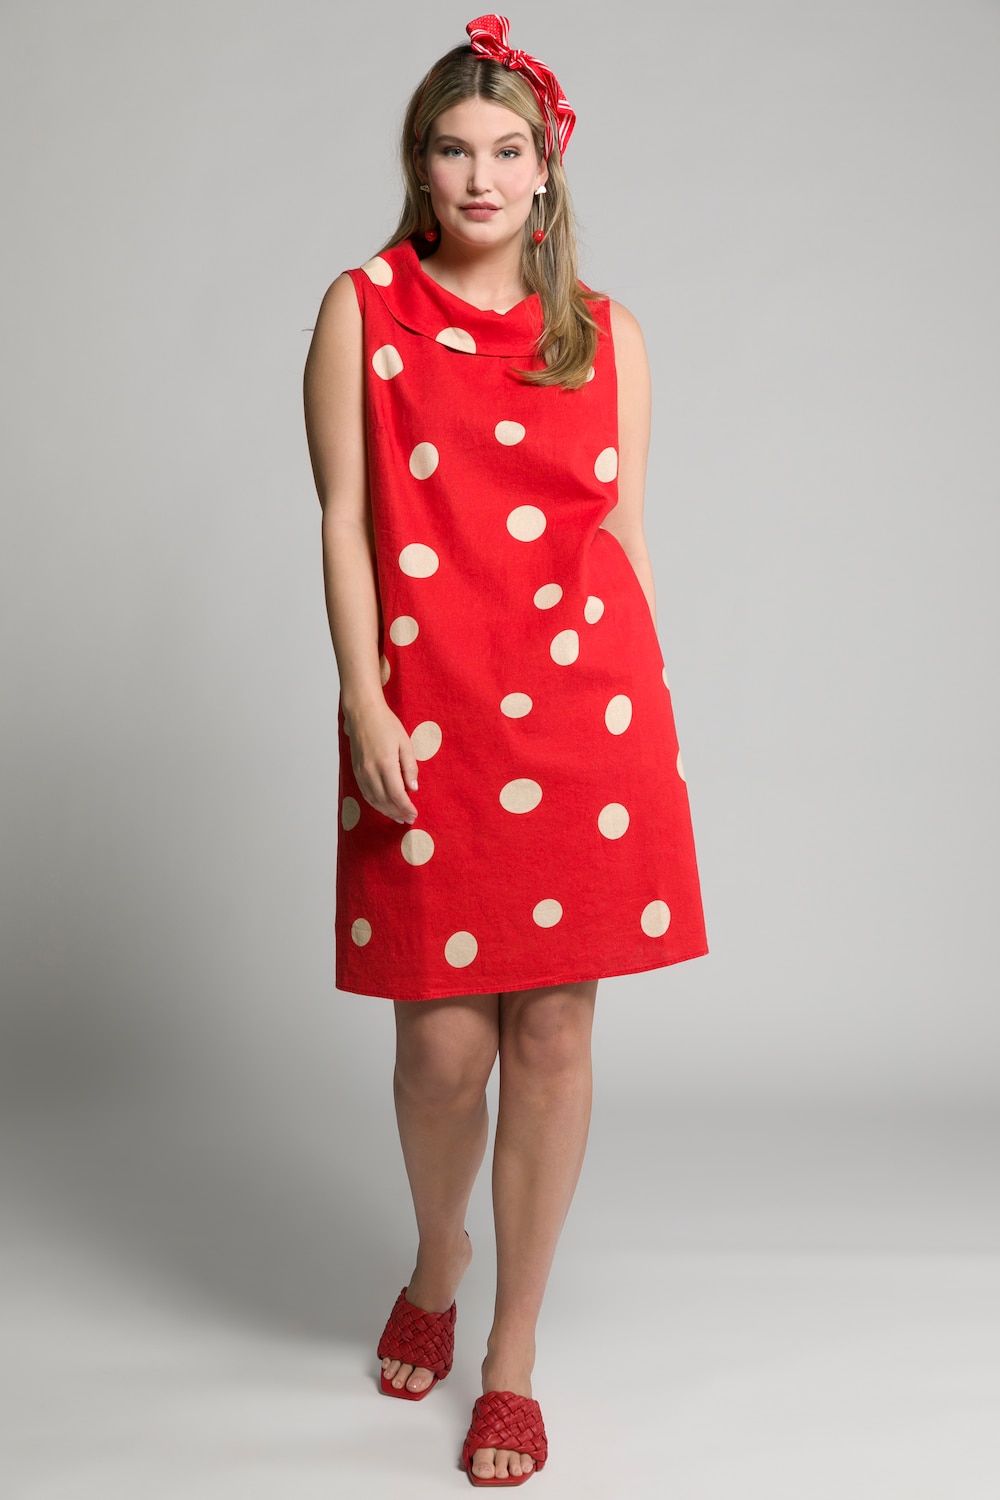 Plus Size Egg Dot Print Linen Blend Tank Dress, Woman, red, size: 16/18, linen/cotton, Ulla Popken